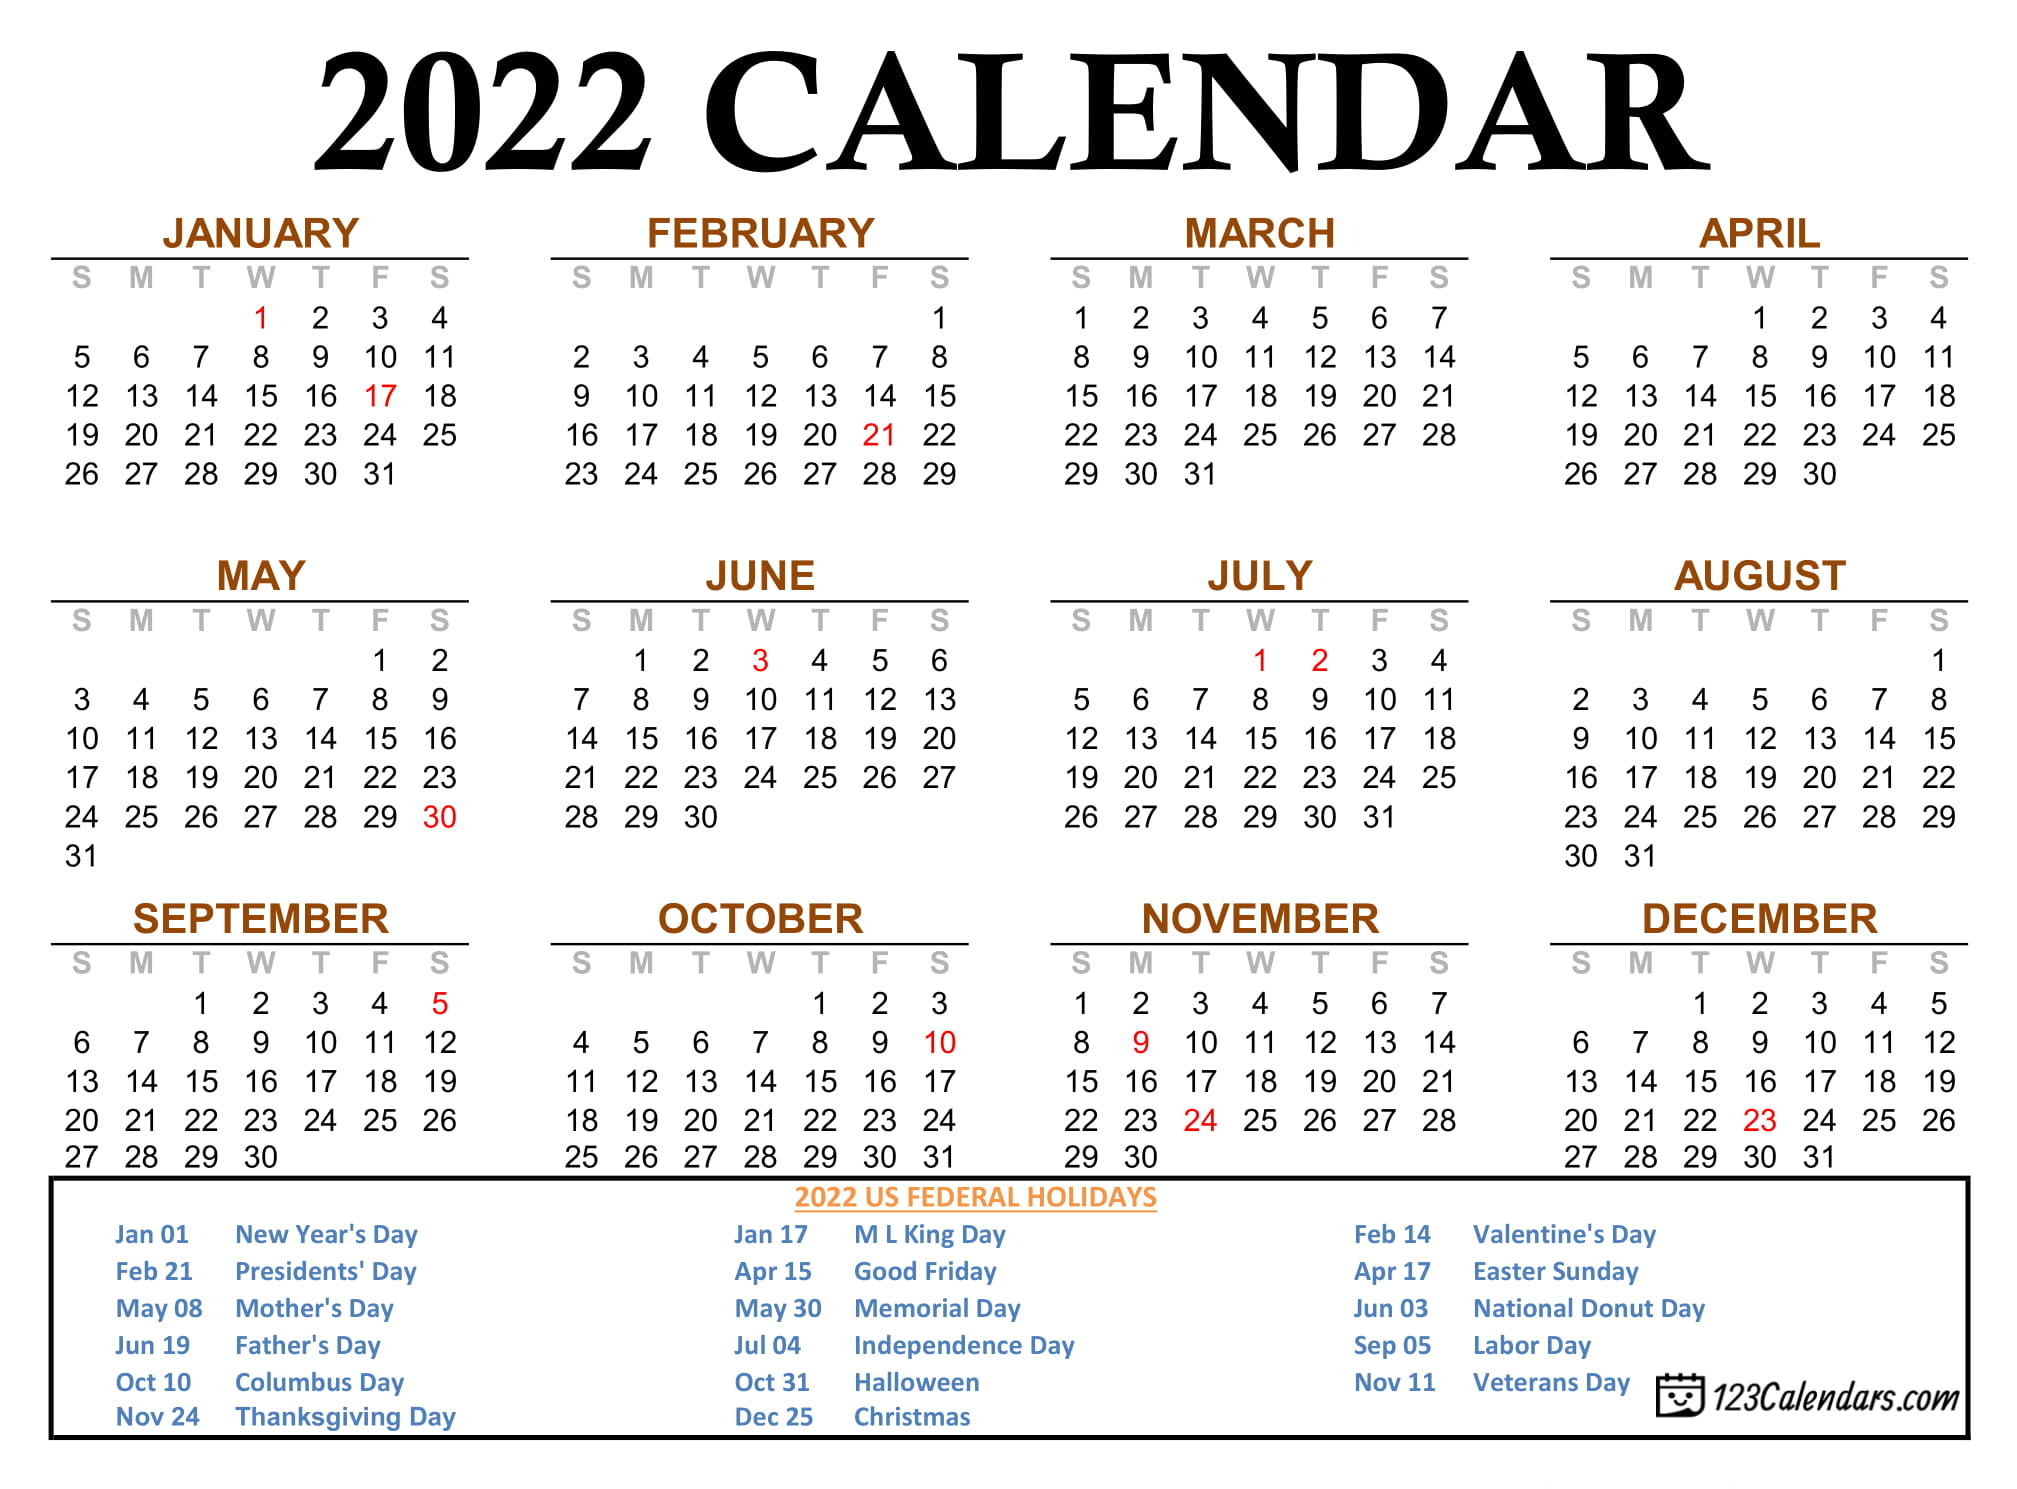 2022 Calendar Is The Same As What Year - Towhur